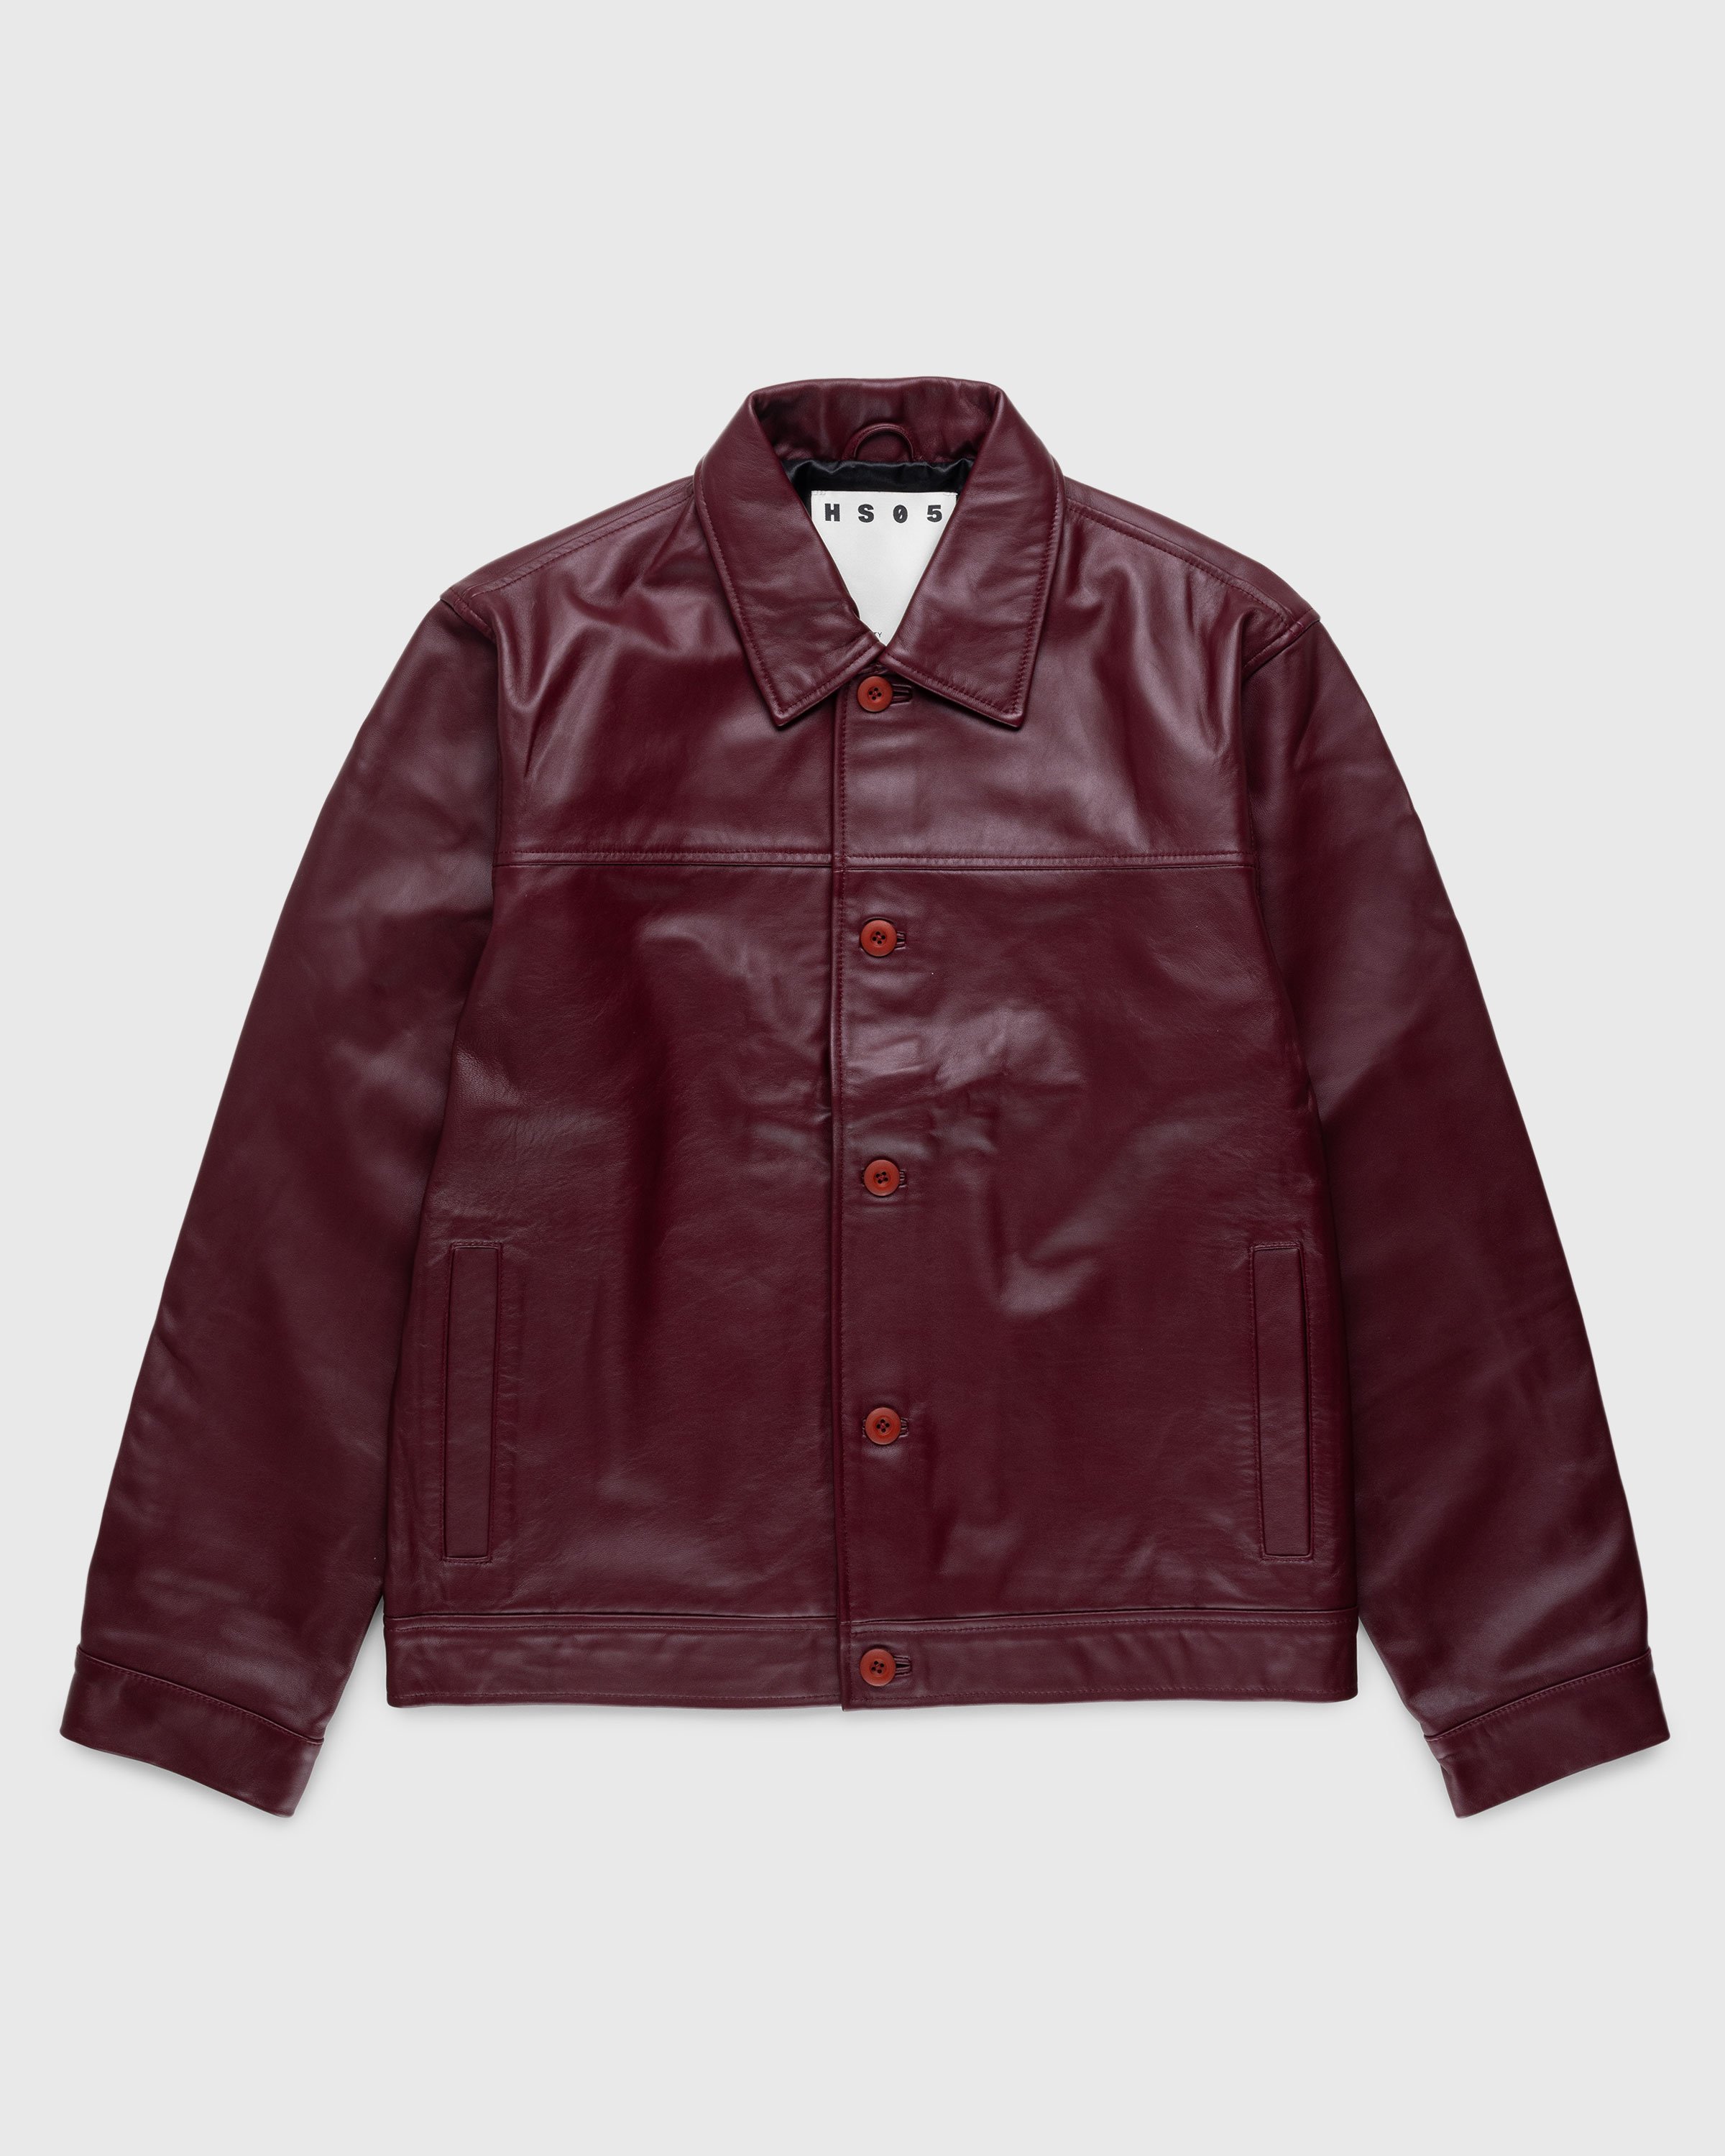 Highsnobiety HS05 - Leather Jacket Burgundy - Clothing - Red - Image 1